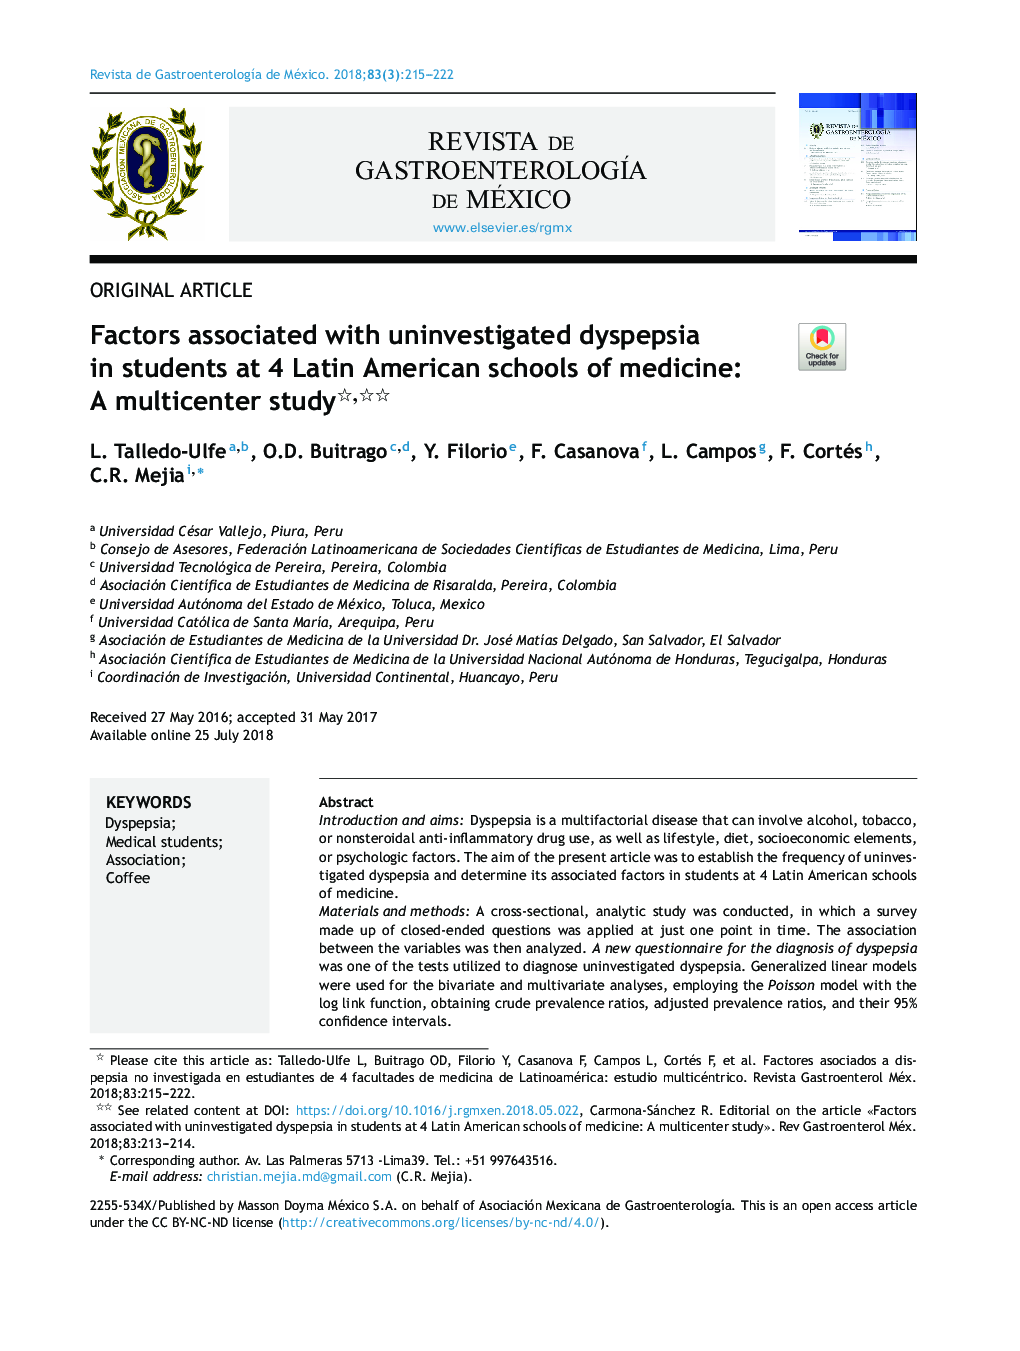 عوامل مرتبط با دیسپپسی ناشناخته در دانش آموزان 4 دانشکده پزشکی آمریکای لاتین: مطالعه چند مرکزی 